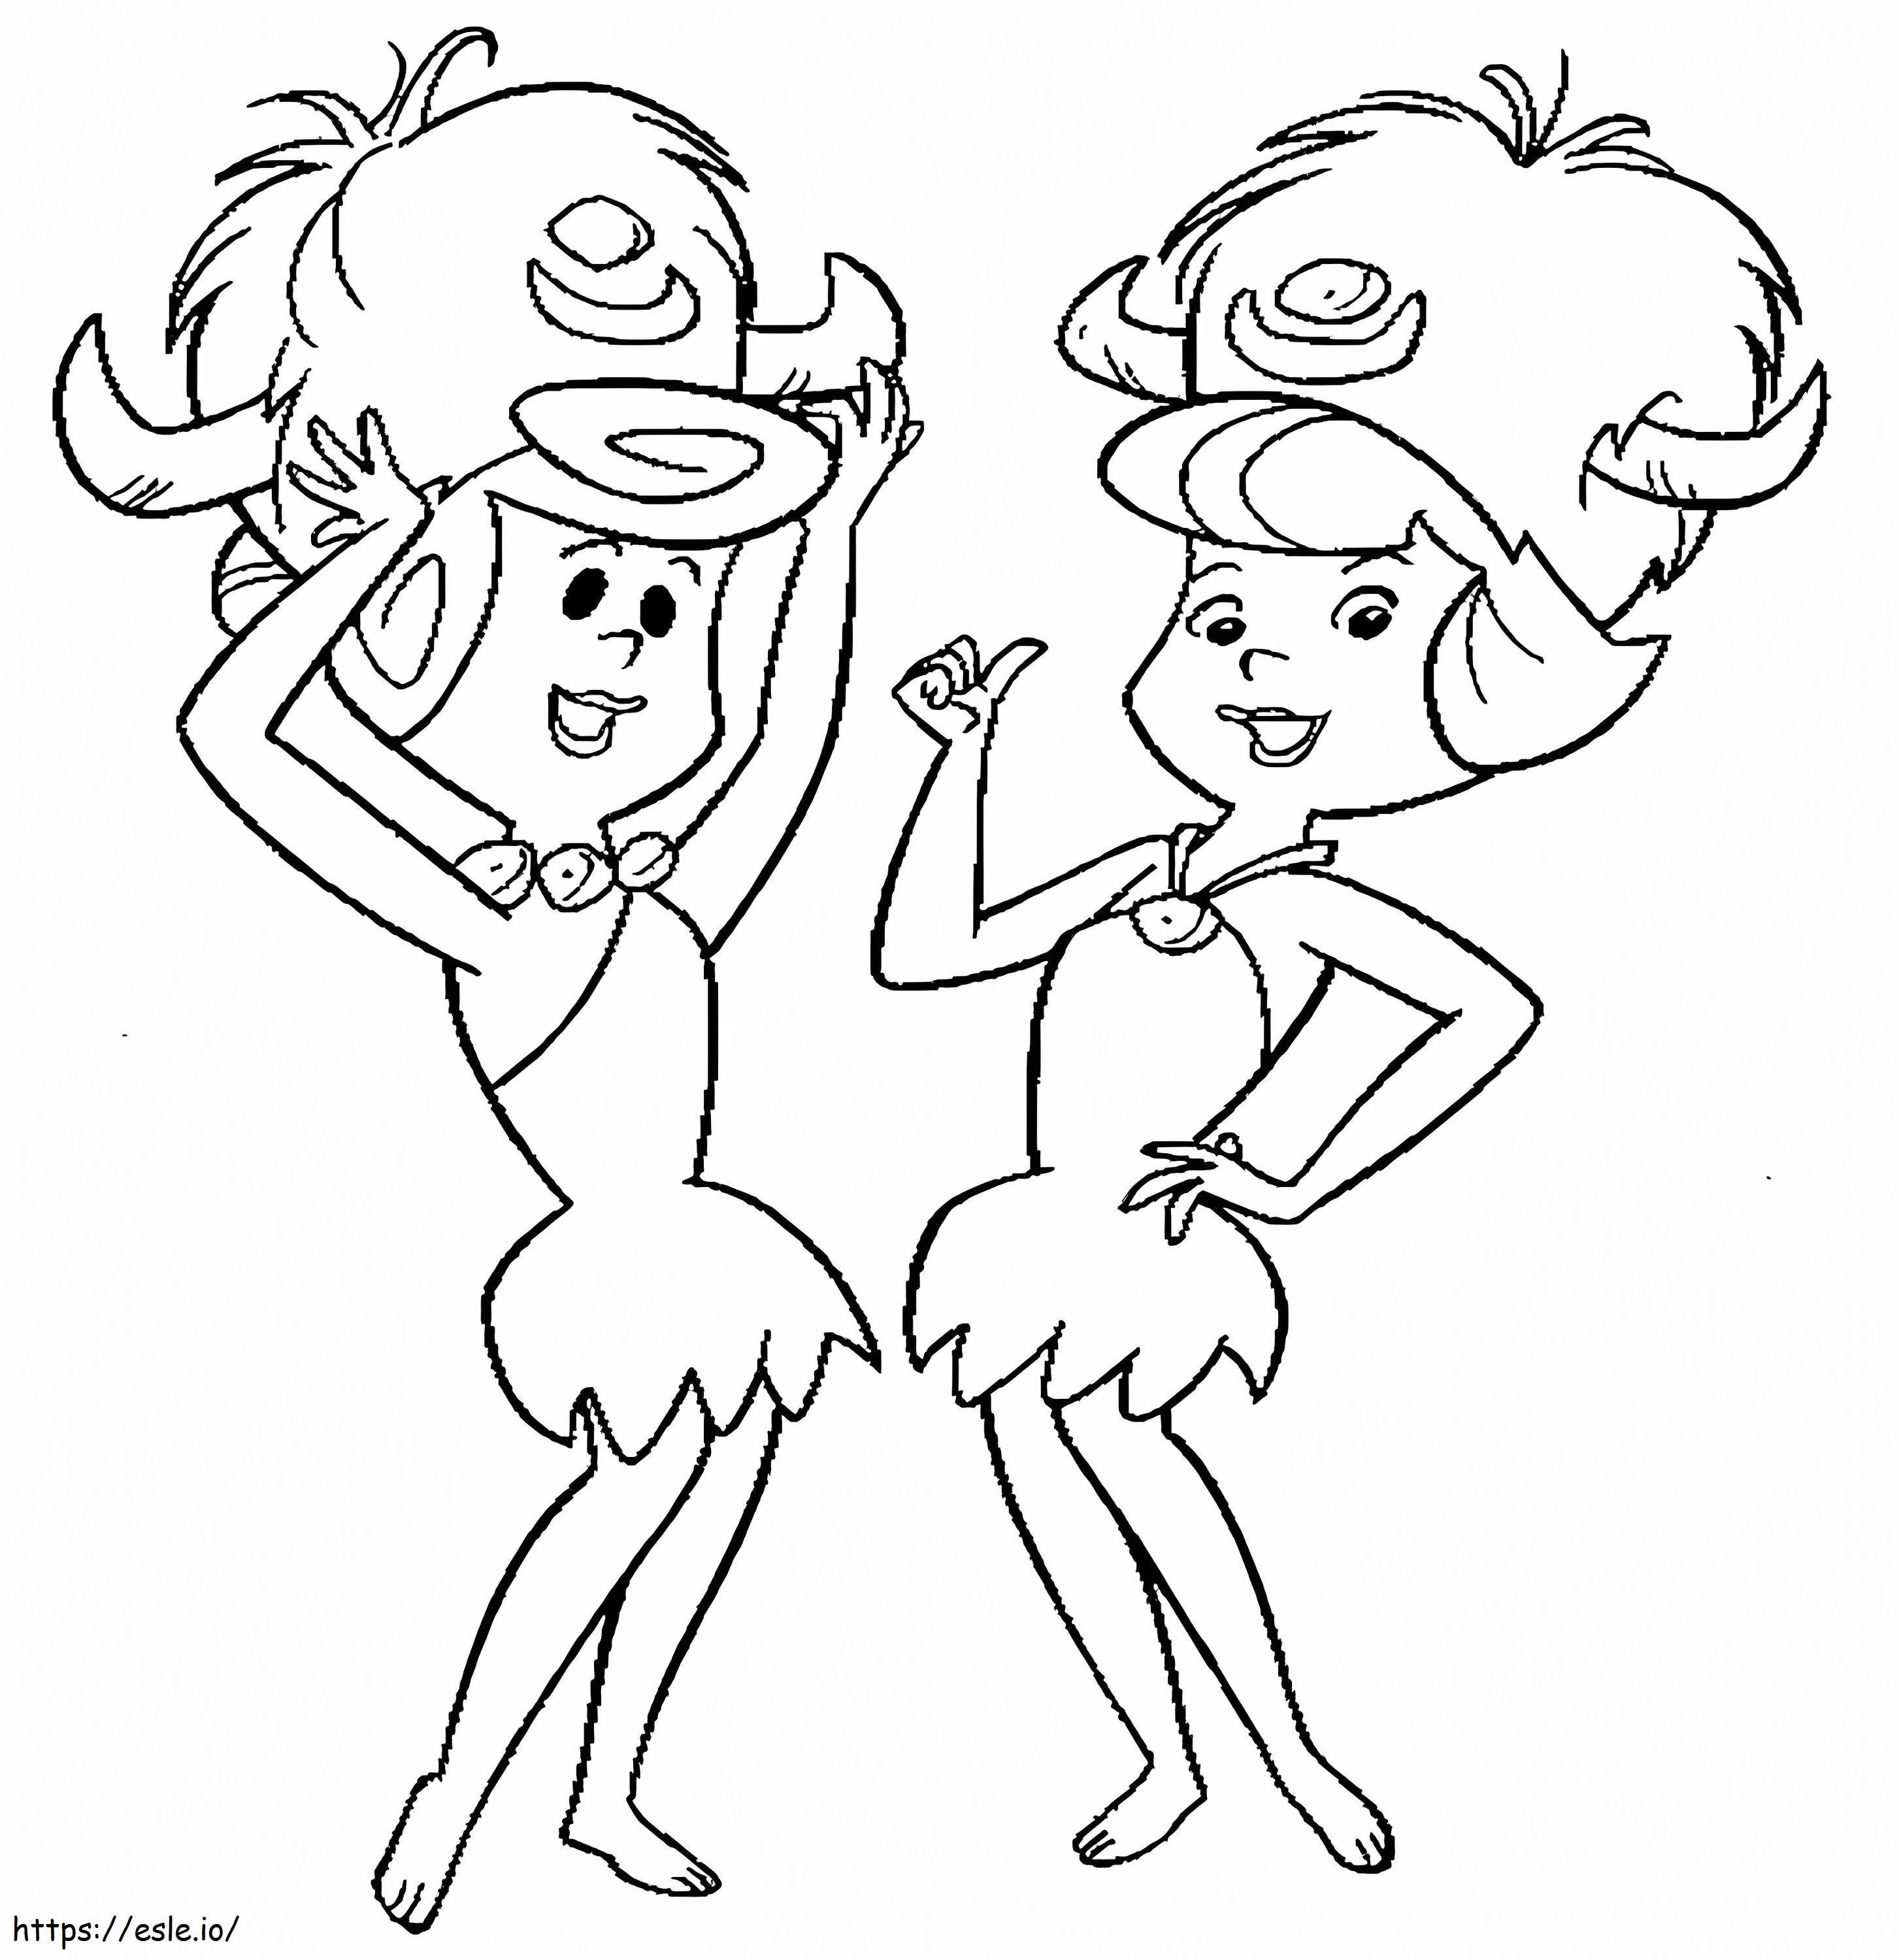 Wilma und Betty ausmalbilder